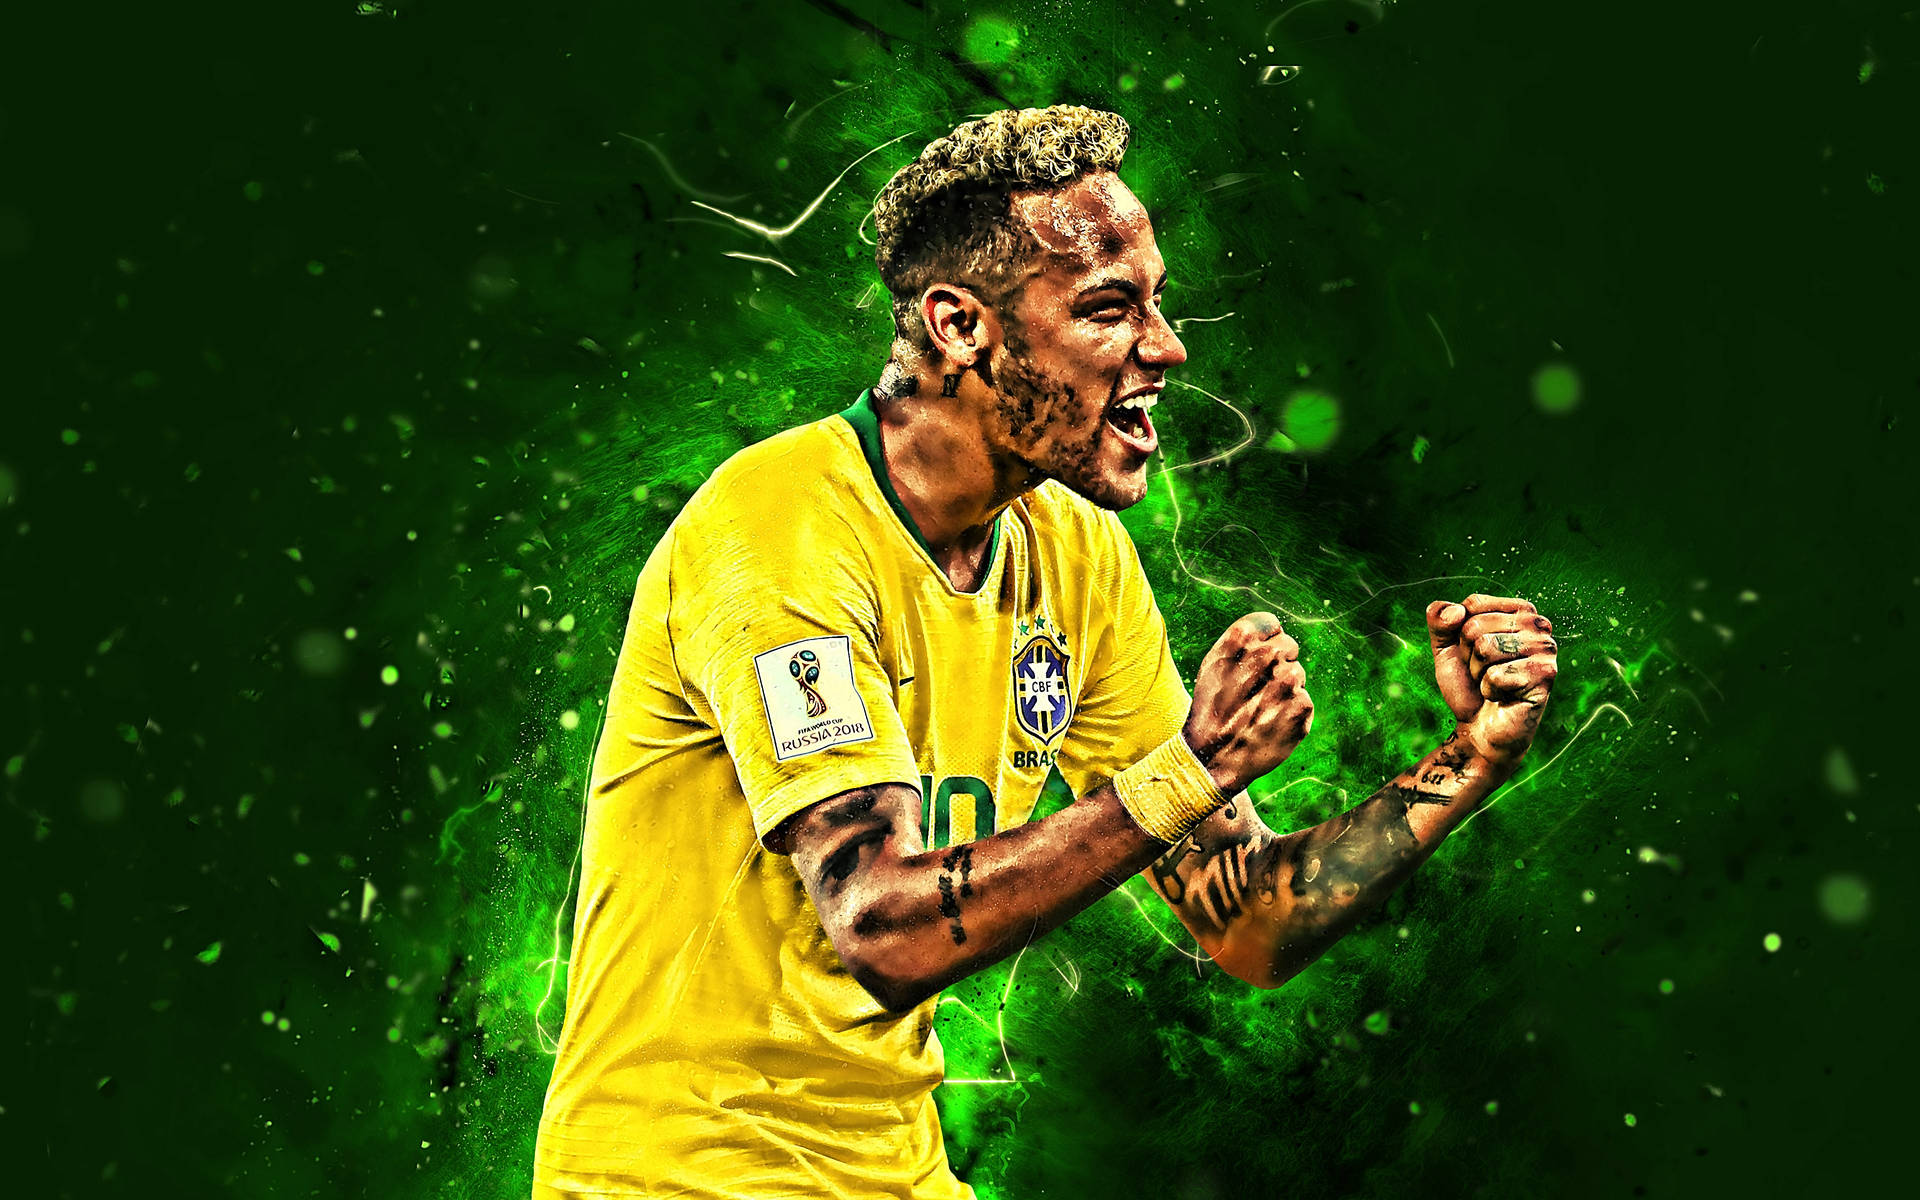 Fanart Of Neymar Jr In Yellow Background